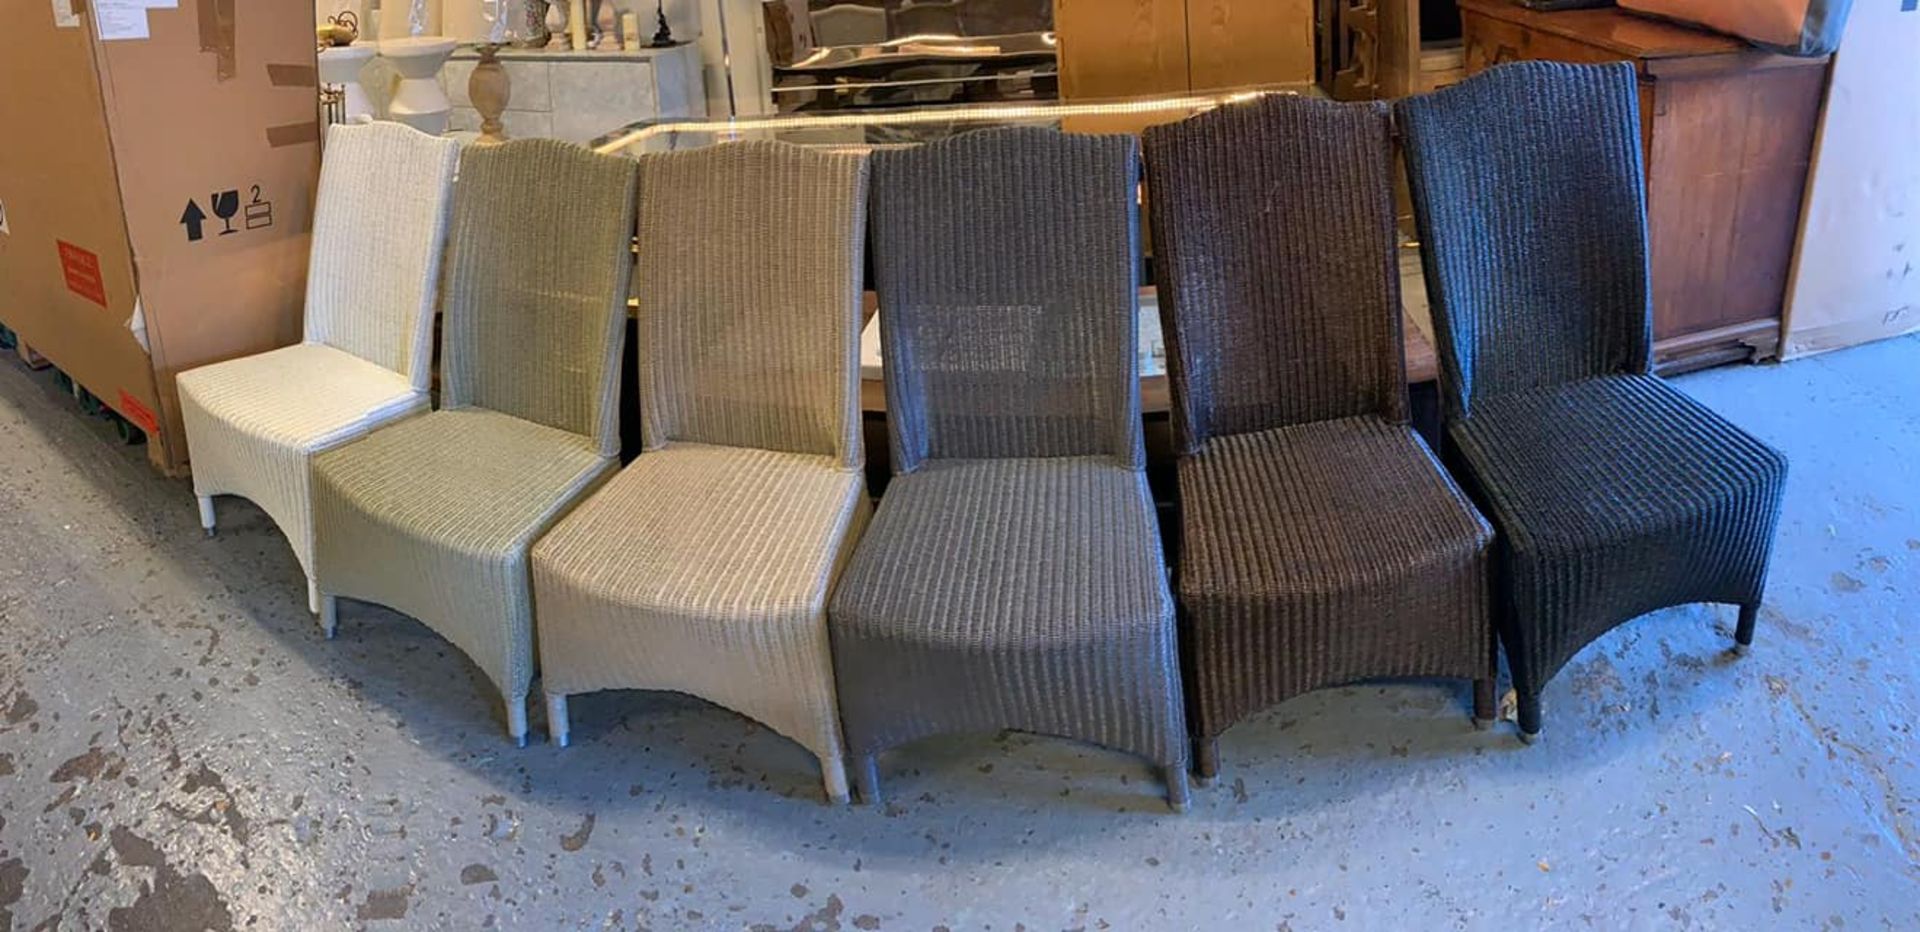 Lloyd Loom Chairs